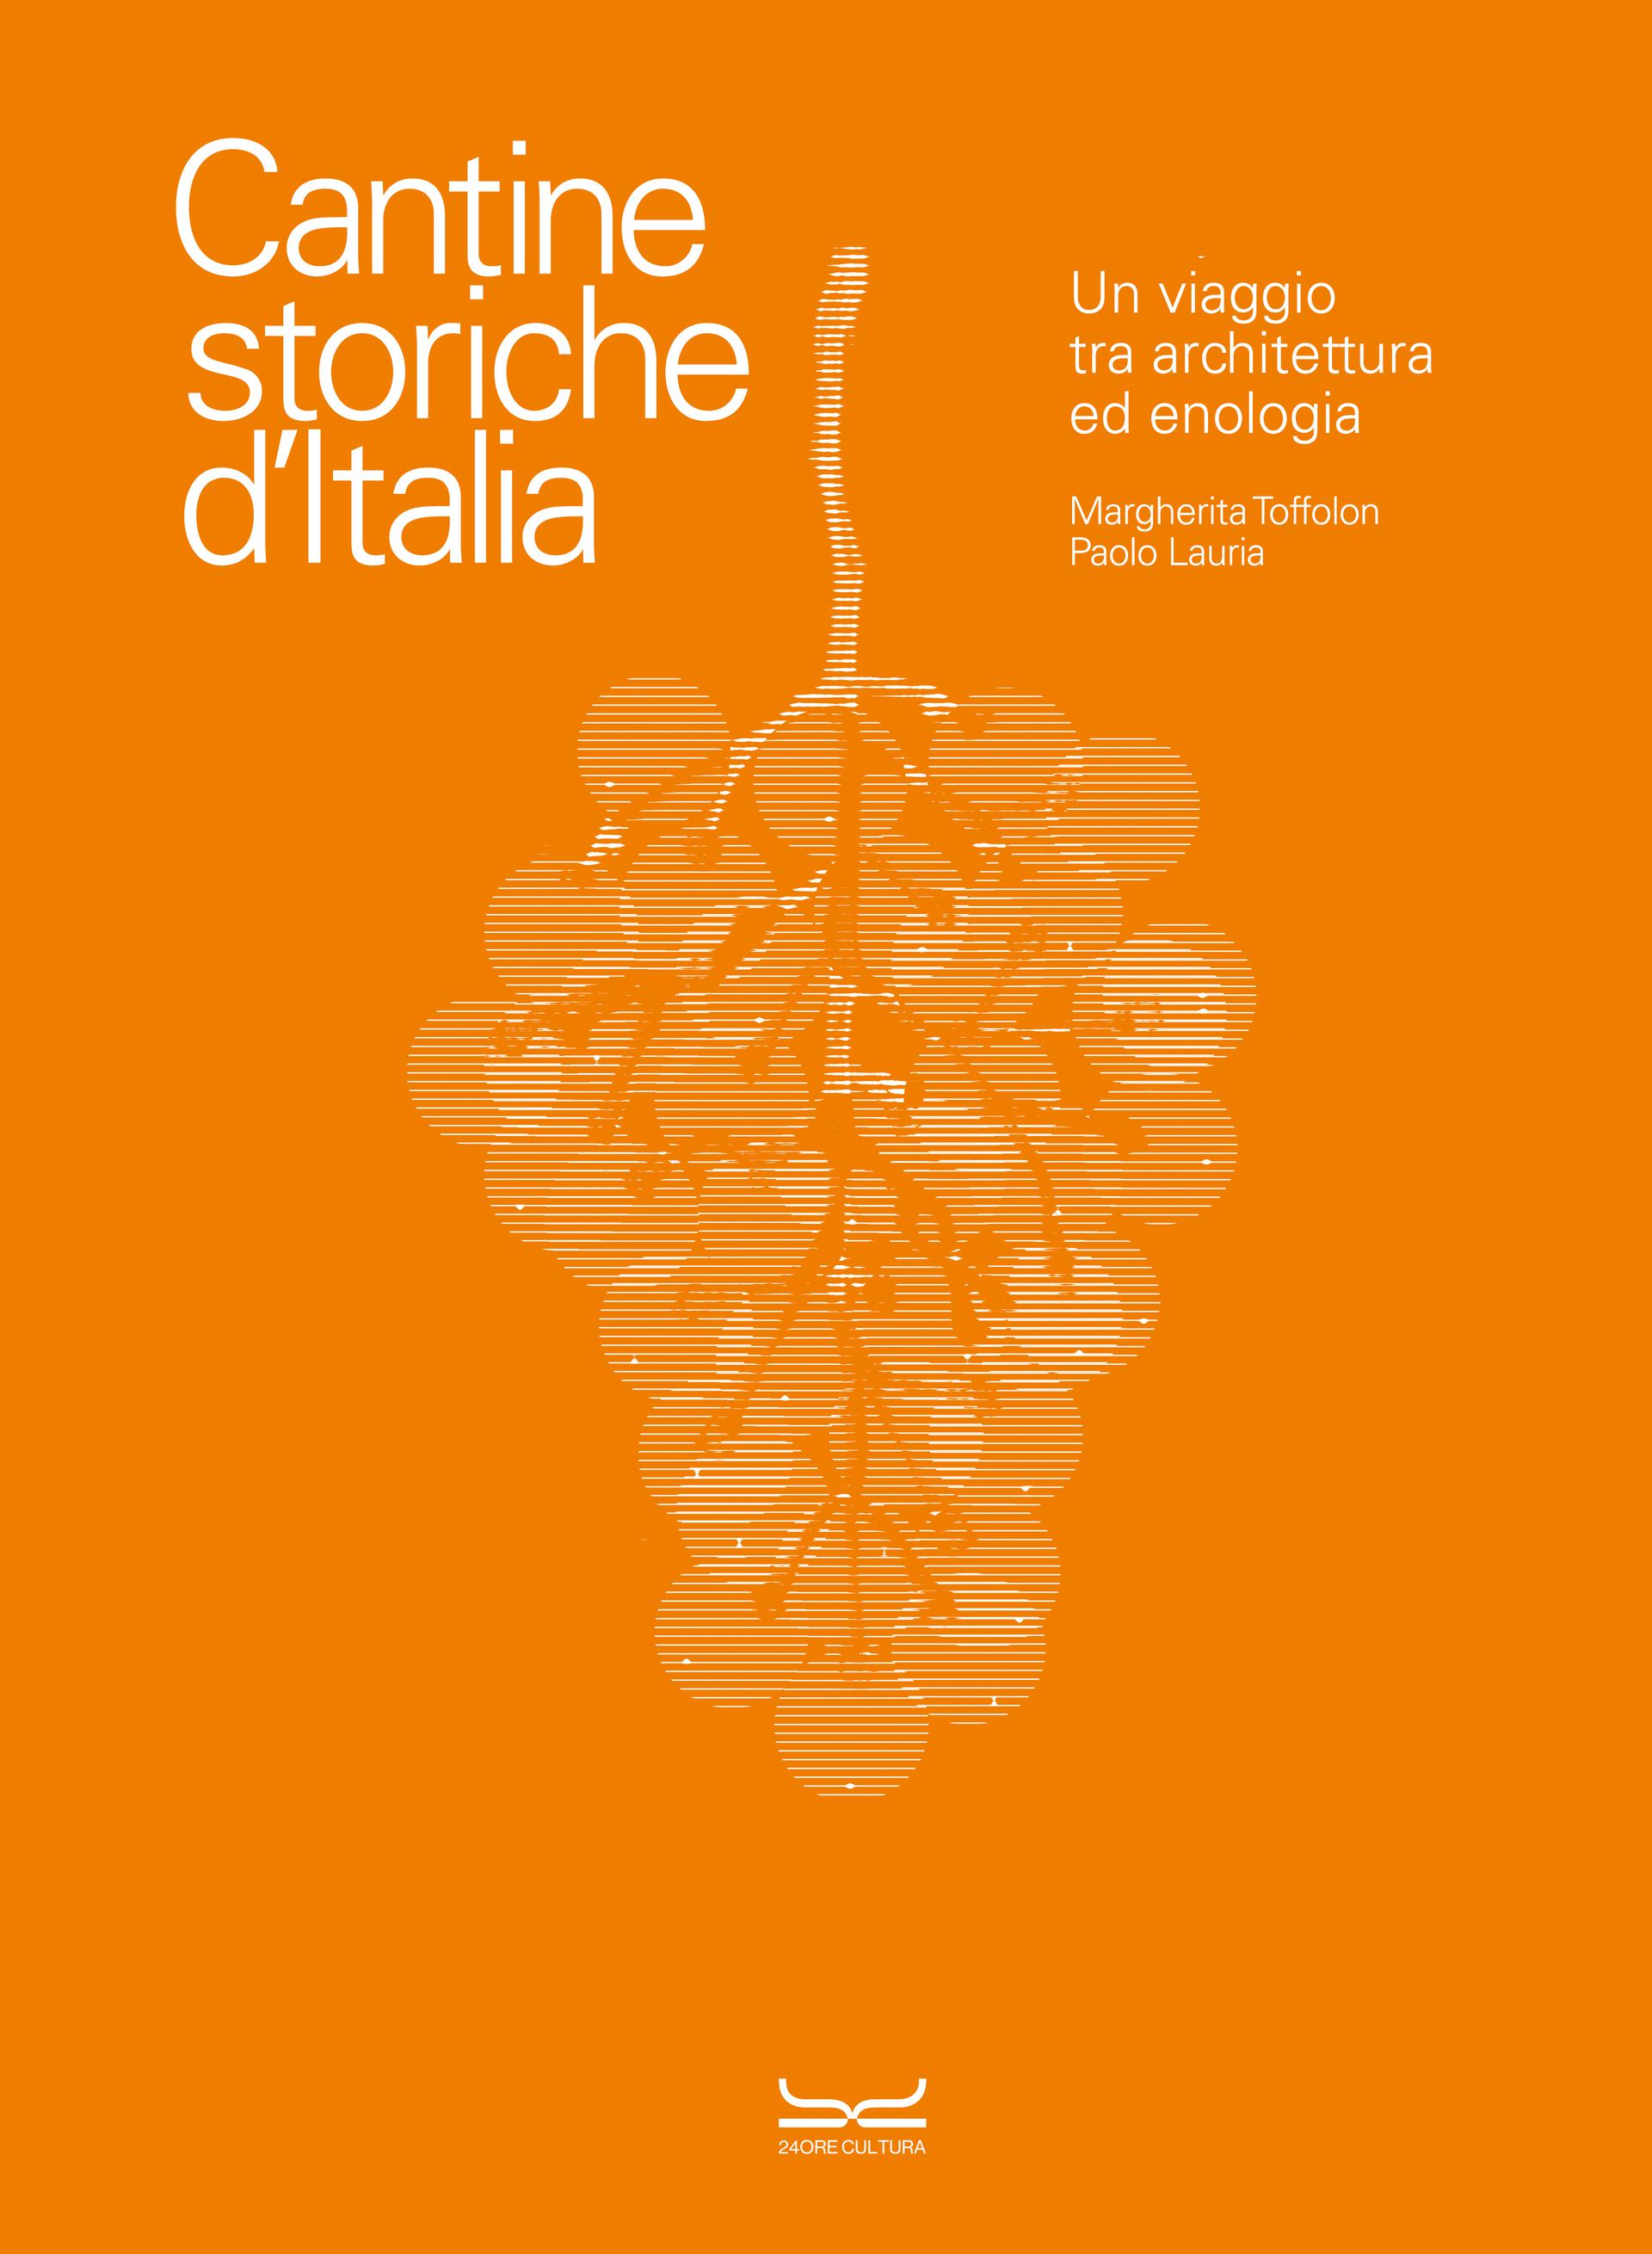 CANTINE STORICHE D’ITALIA. Un viaggio tra architettura ed enologia, di Margherita Toffolon e Paolo Lauria, 24 ORE Cultura